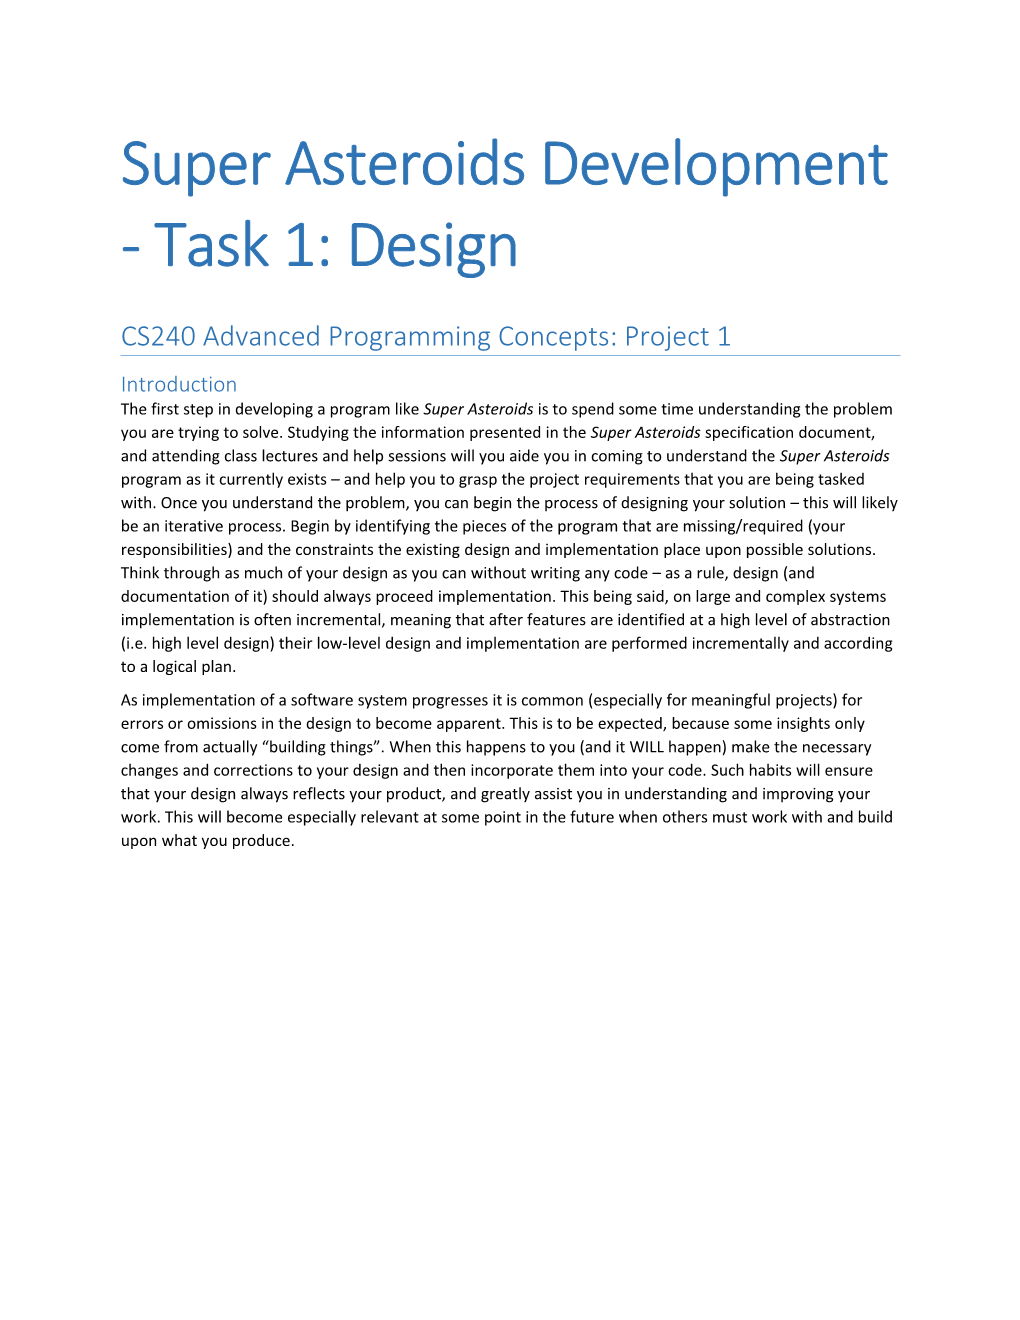 CS240 Advanced Programming Concepts: Project 1